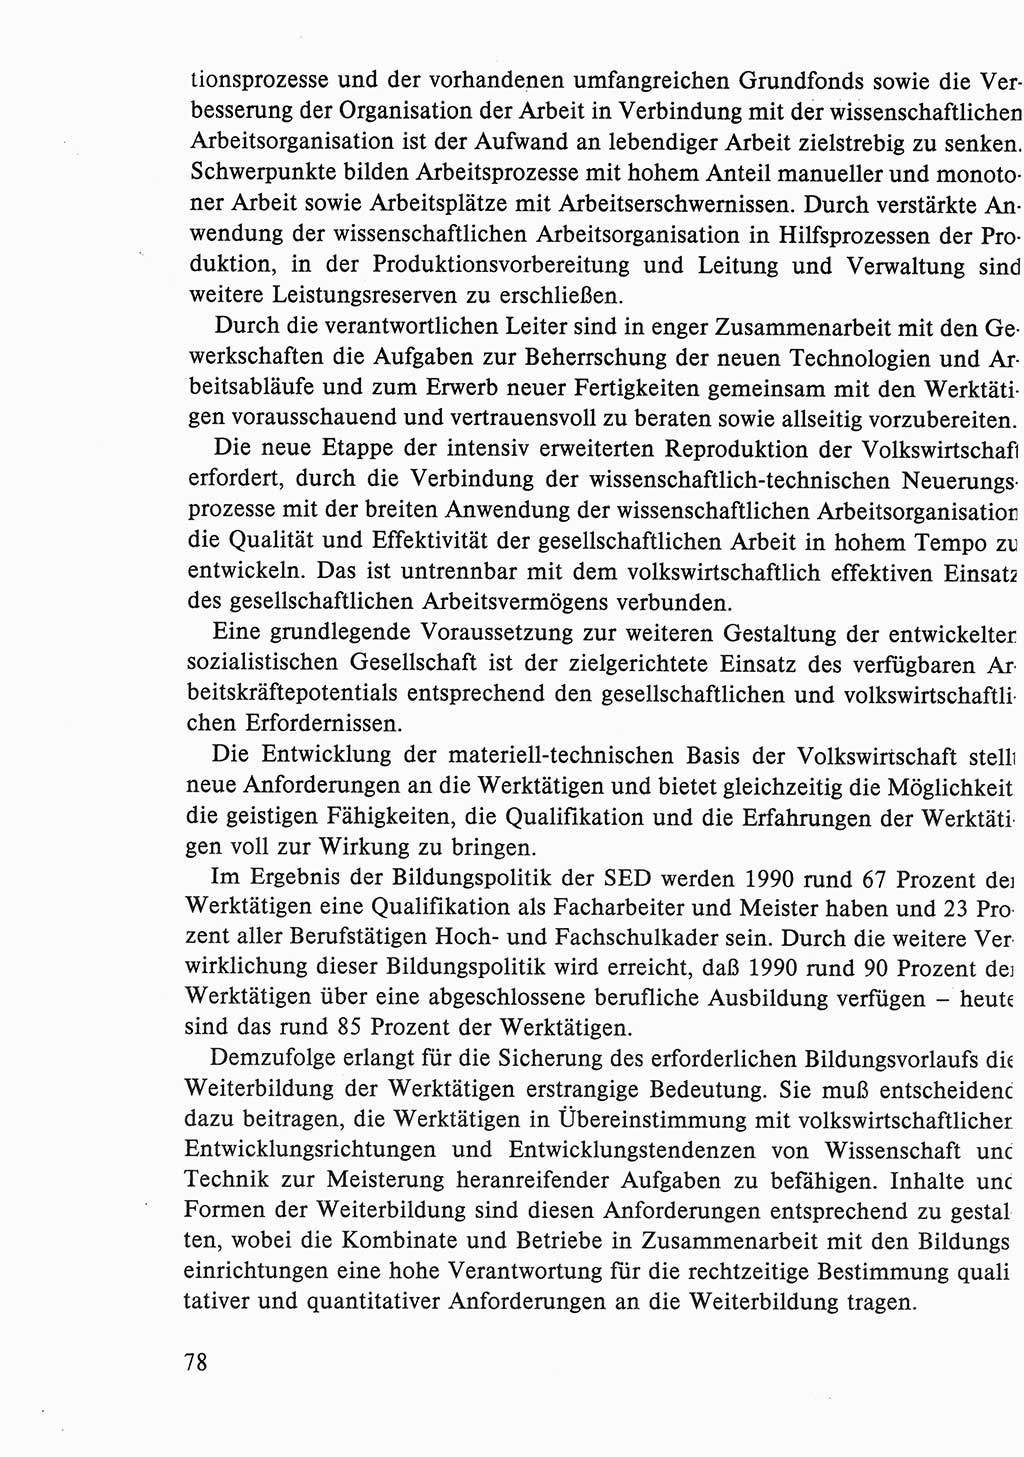 Dokumente der Sozialistischen Einheitspartei Deutschlands (SED) [Deutsche Demokratische Republik (DDR)] 1986-1987, Seite 78 (Dok. SED DDR 1986-1987, S. 78)